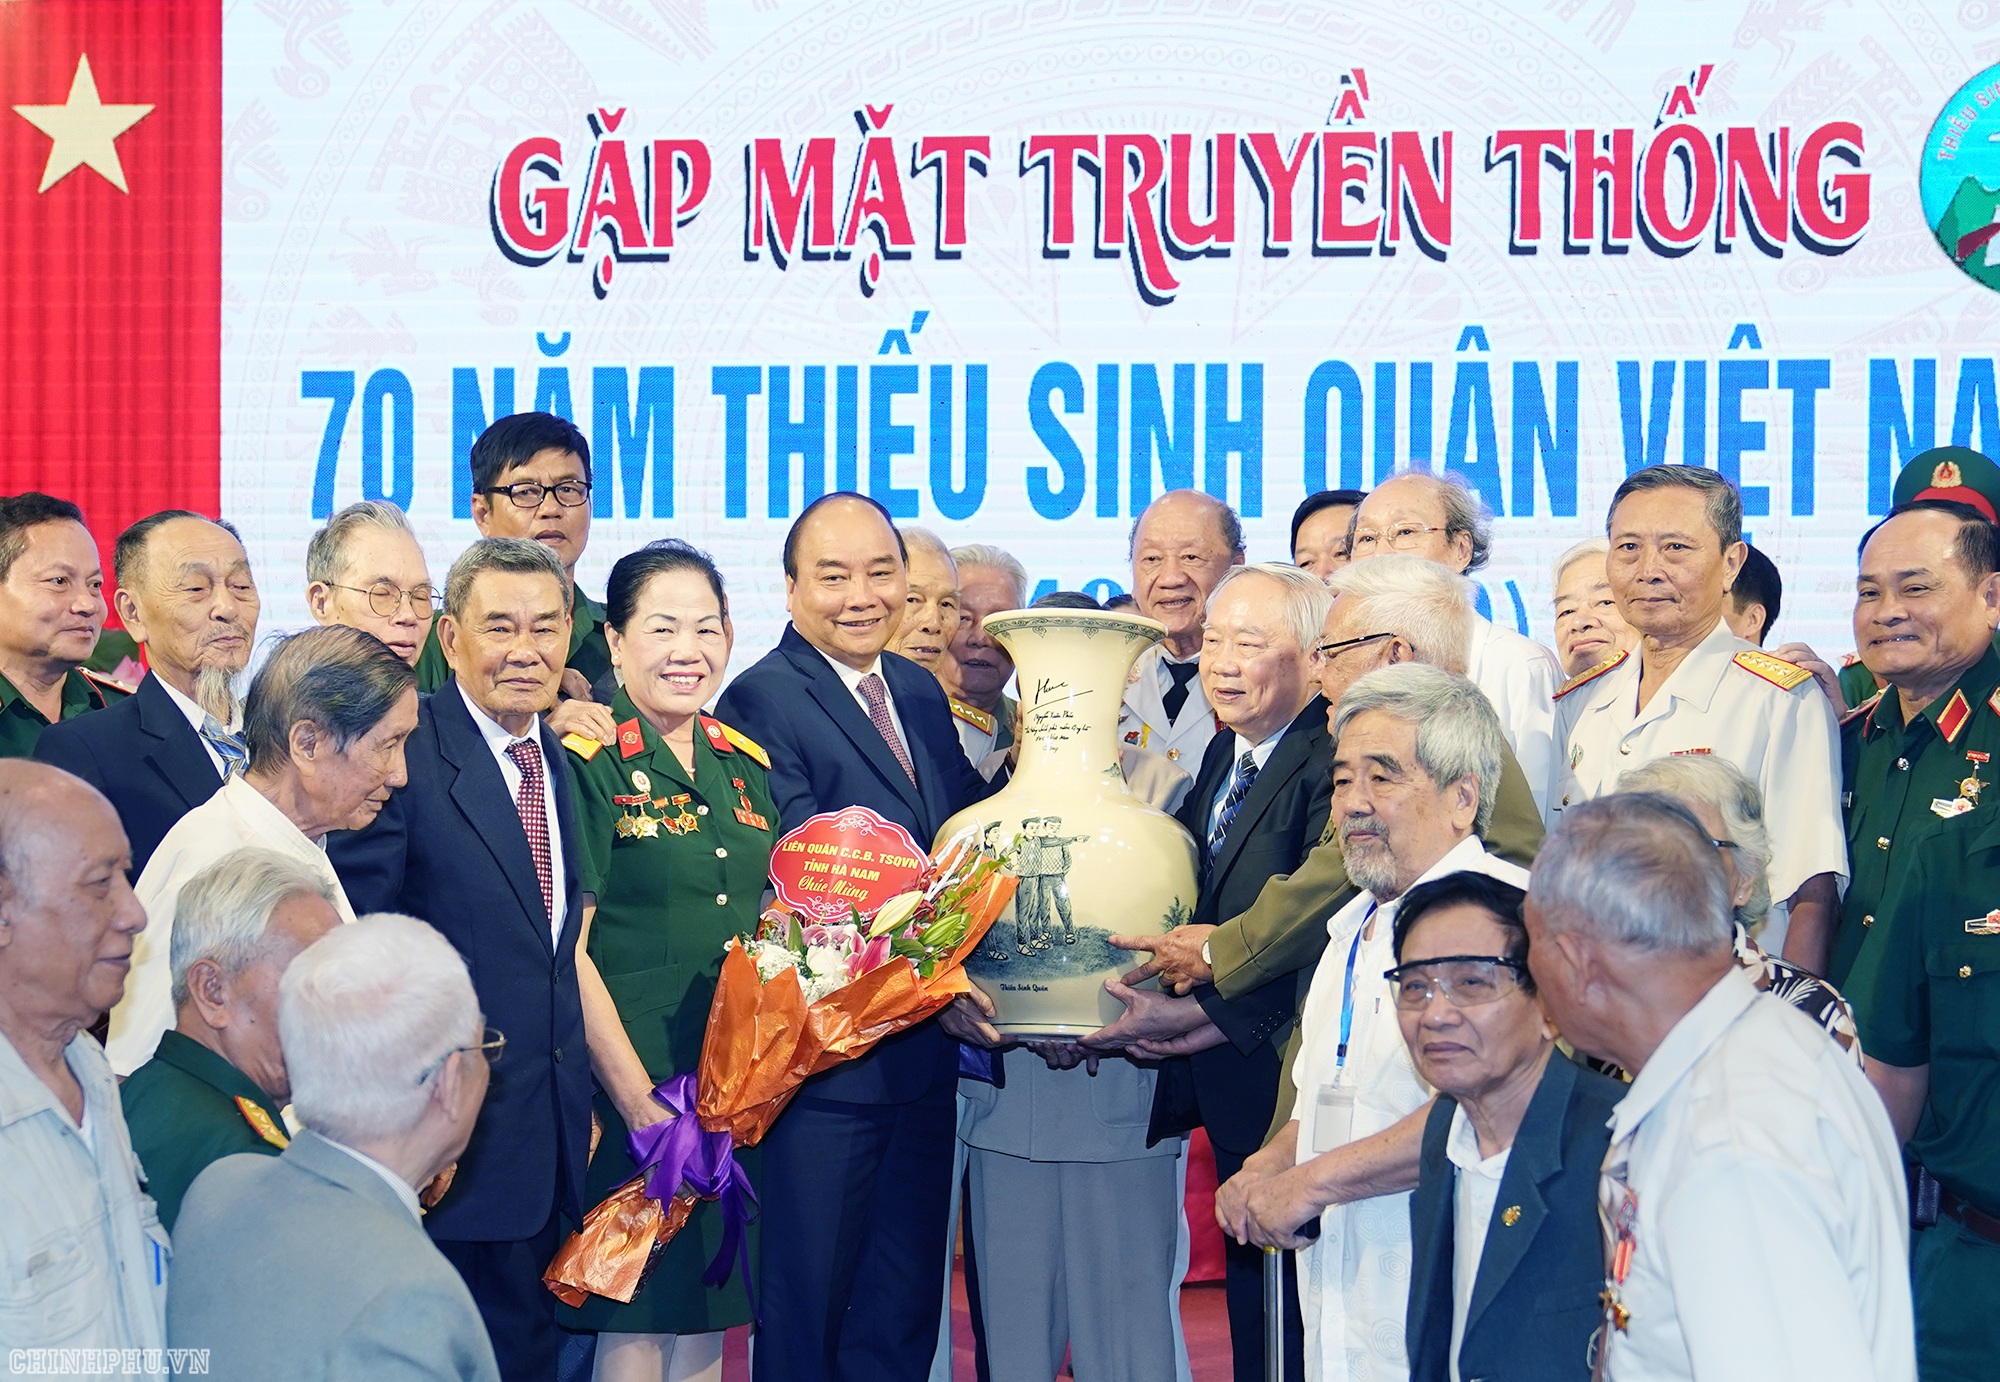 Thủ tướng gặp mặt cựu học sinh các Trường Thiếu sinh quân Việt Nam